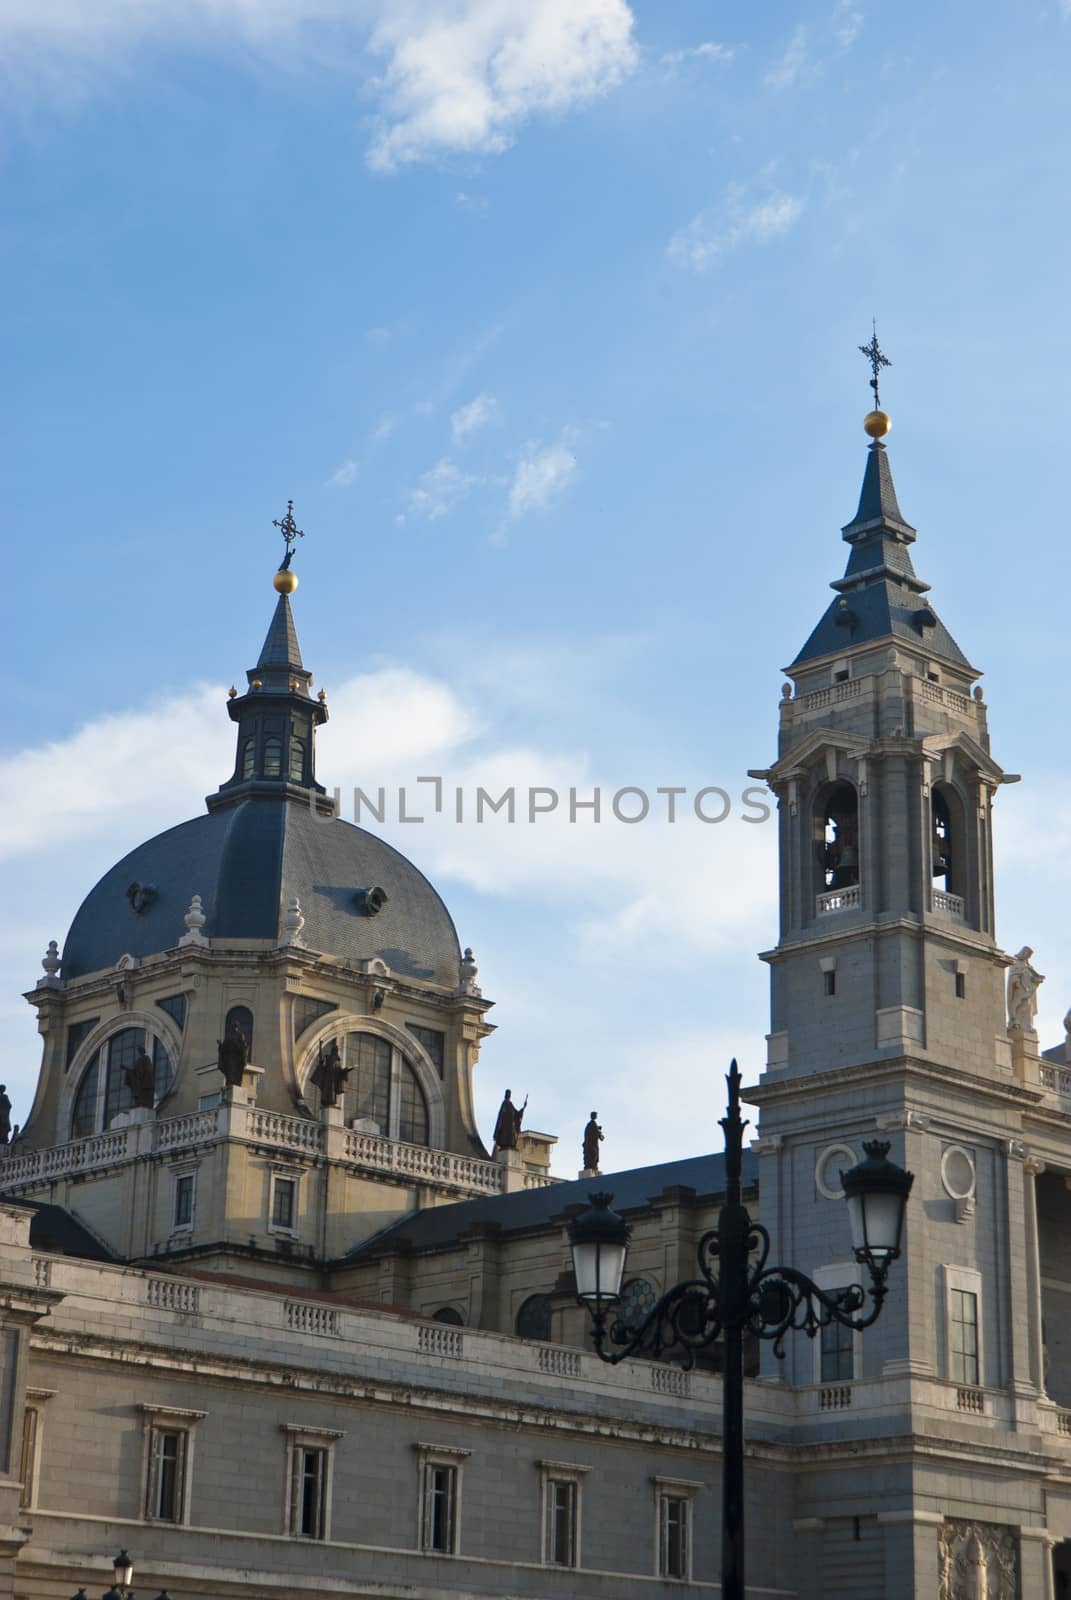 Almudena Cathedral, Madrid by gandolfocannatella